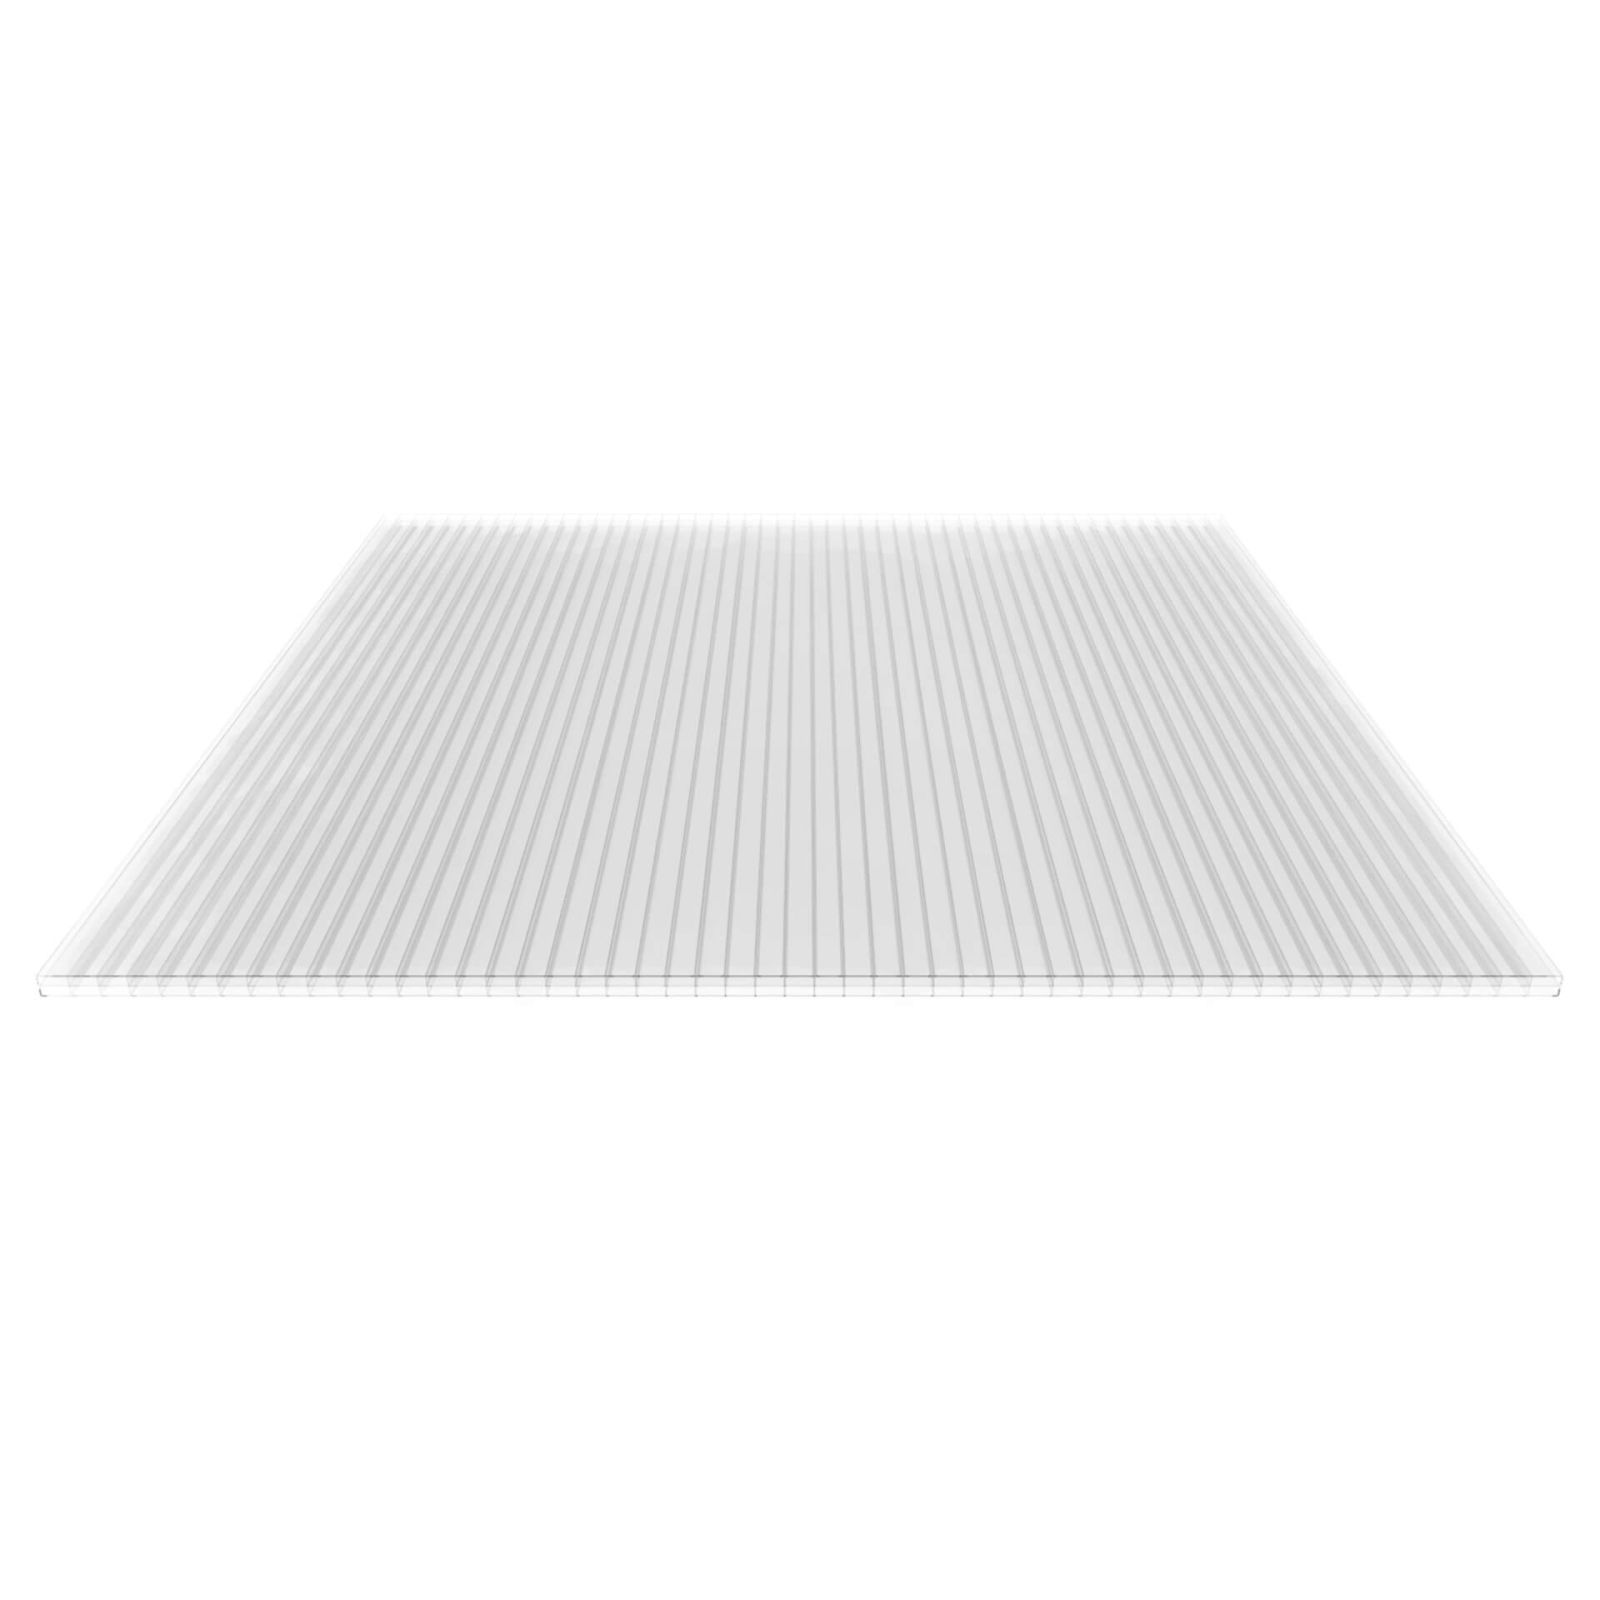 Polycarbonat Stegplatte | 16 mm | Profil Mendiger | Sparpaket | Plattenbreite 980 mm | Klar | Breite 3,09 m | Länge 2,00 m #5